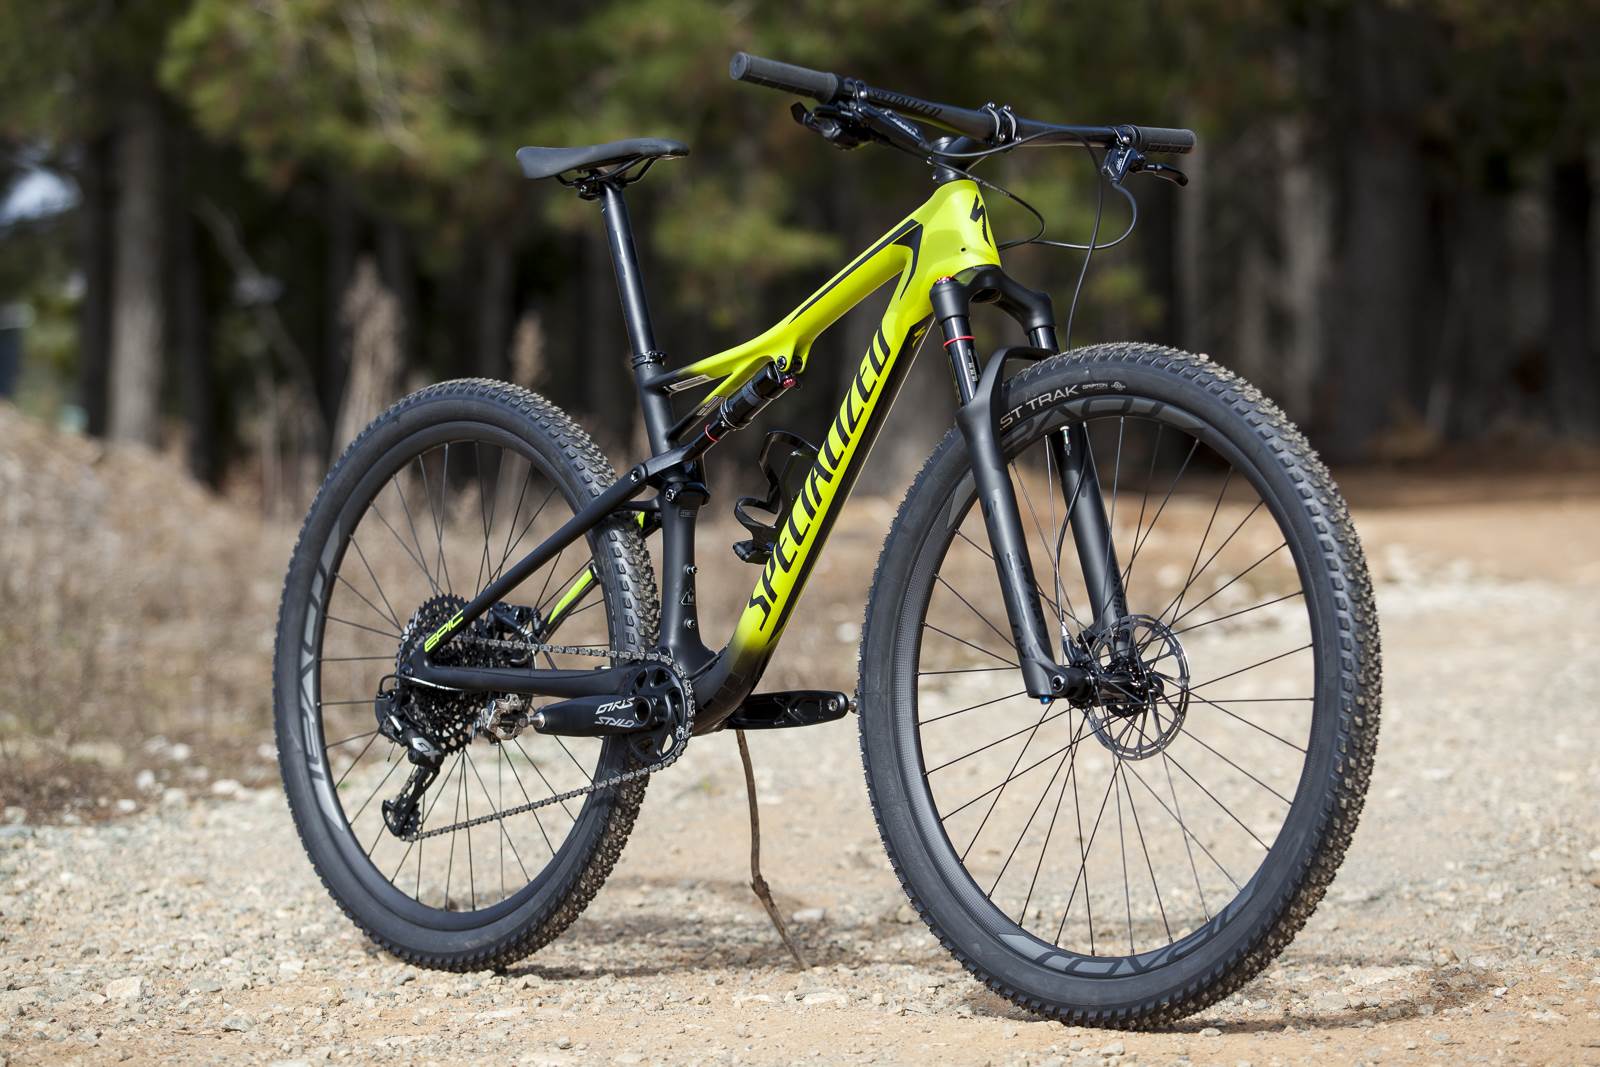 2018 Hot sale 72v 5000w Enduro Ebike Electric bicycle Mountain Bike